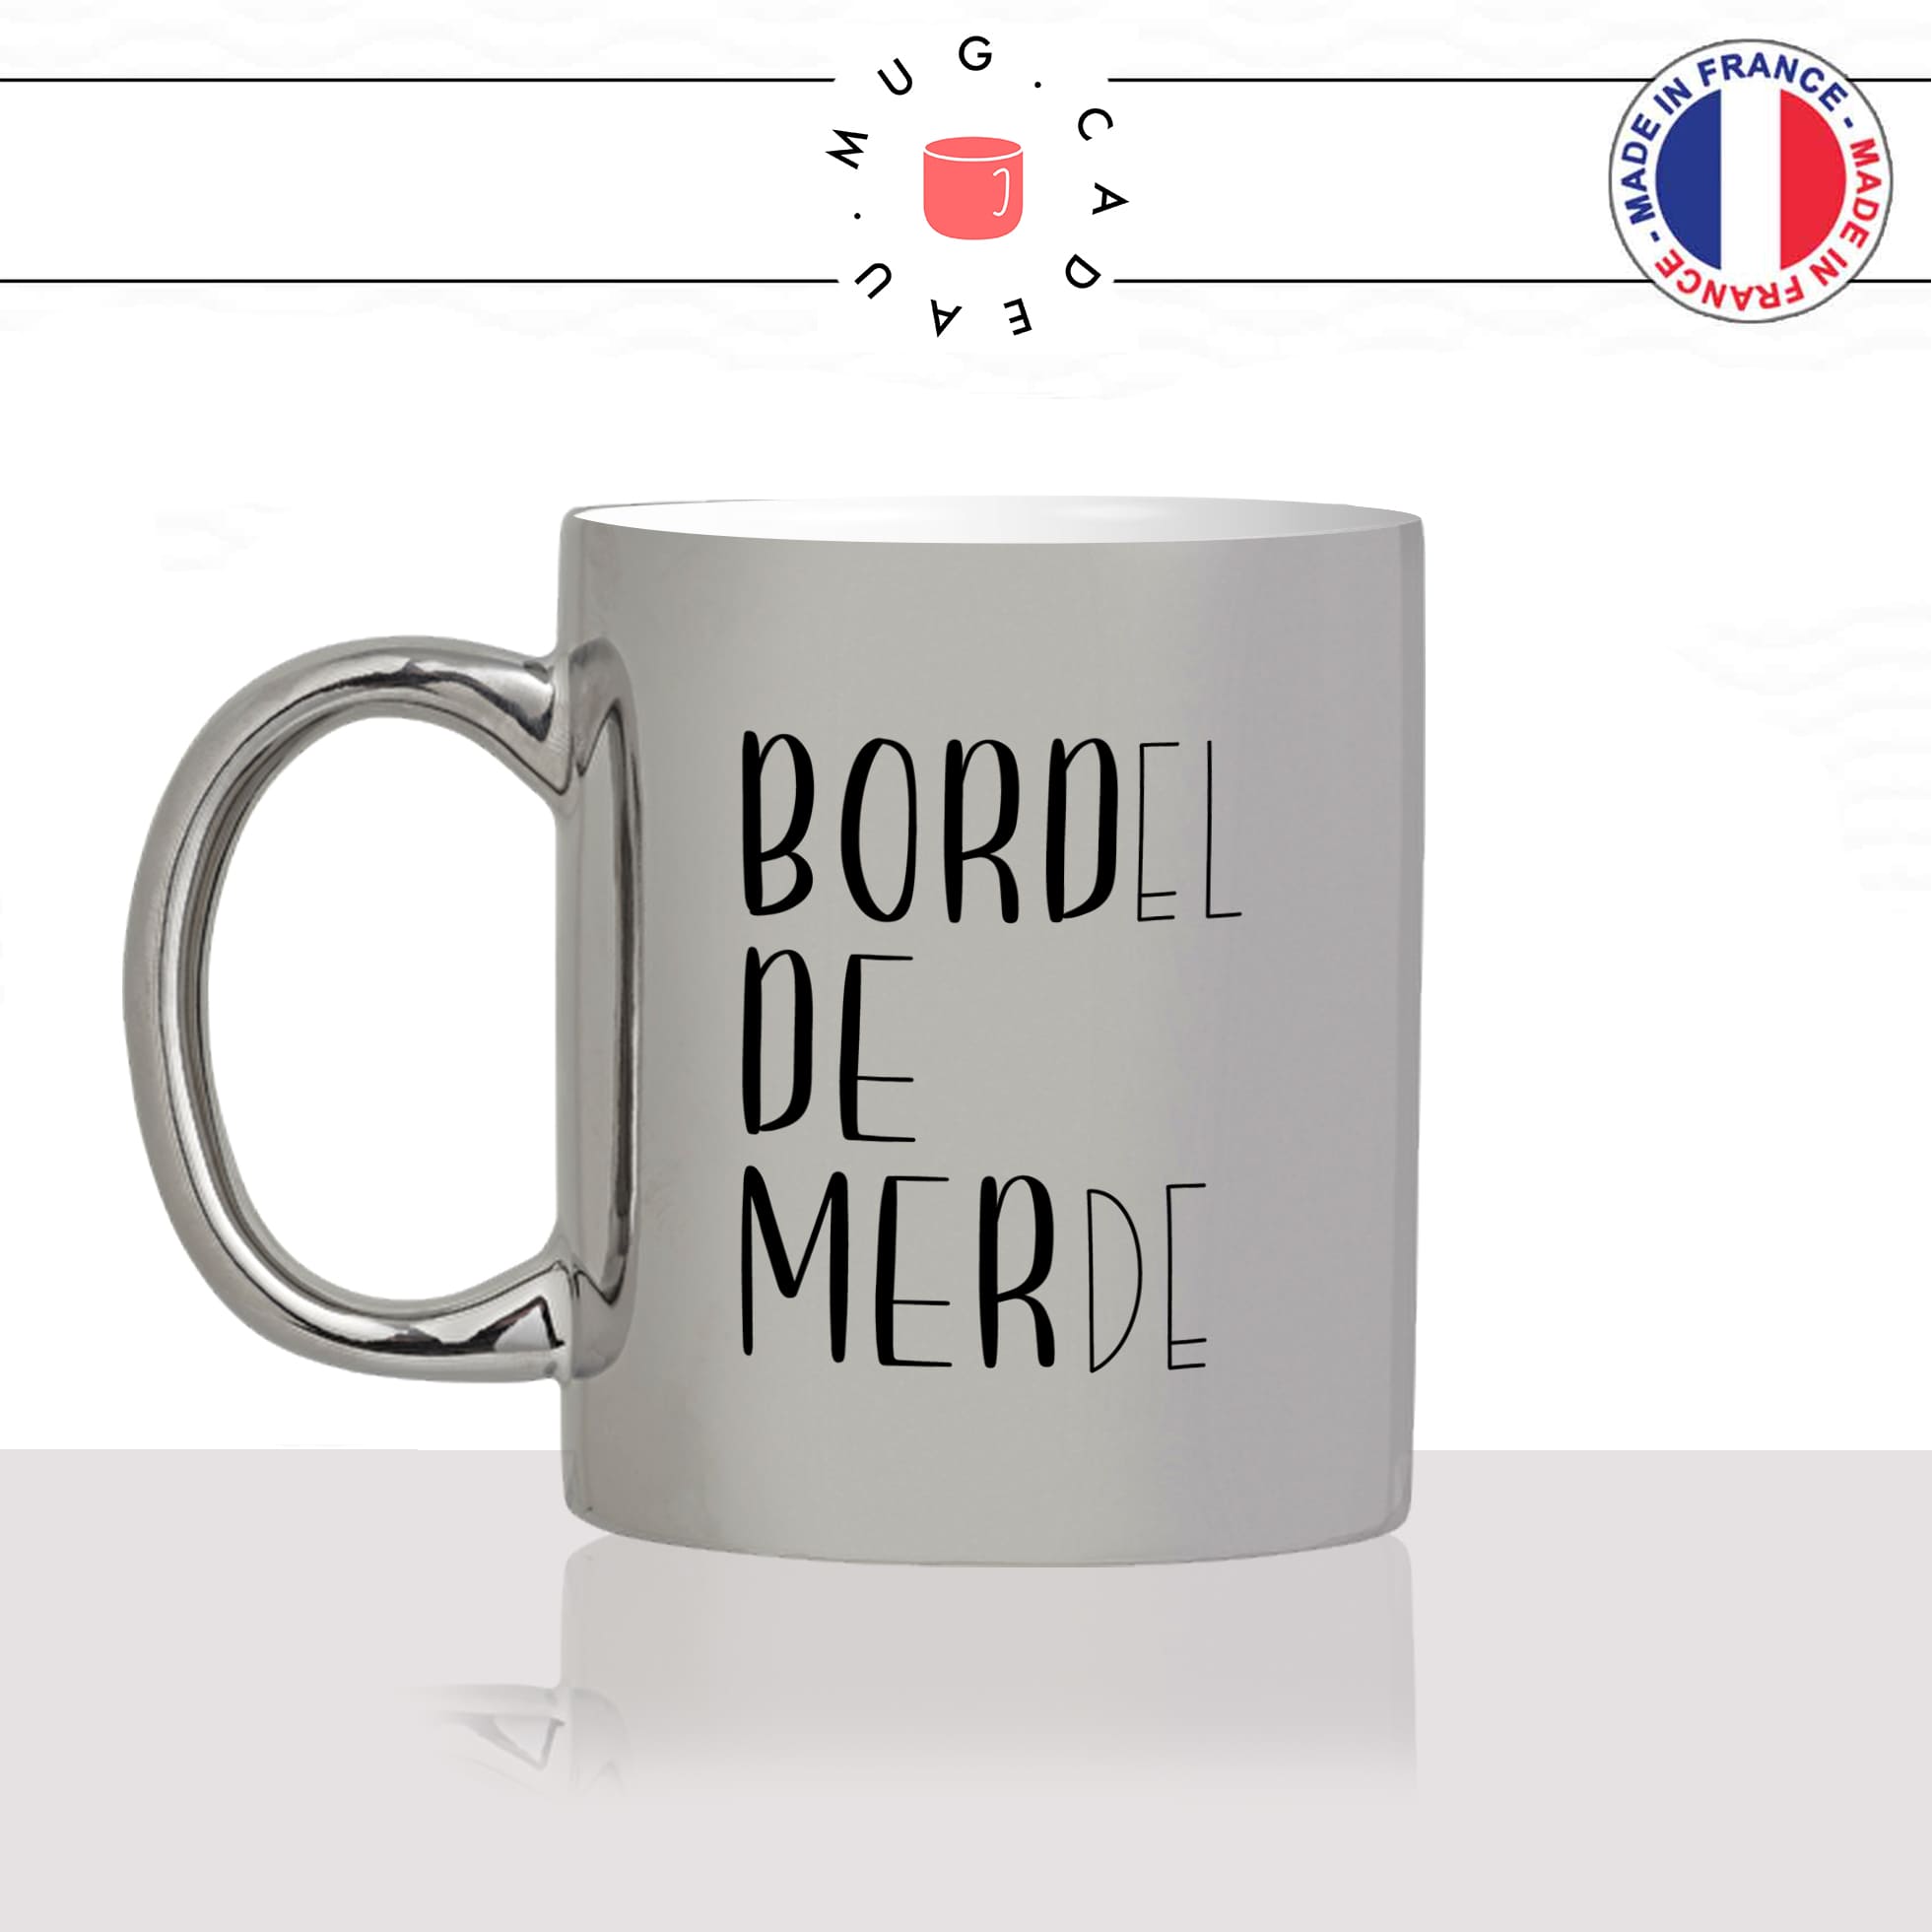 mug-tasse-argent-argenté-silver-bord-de-mer-bordel-de-merde-voyage-travel-collegue-vacance-influenceur-humour-idée-cadeau-fun-cool-café-thé